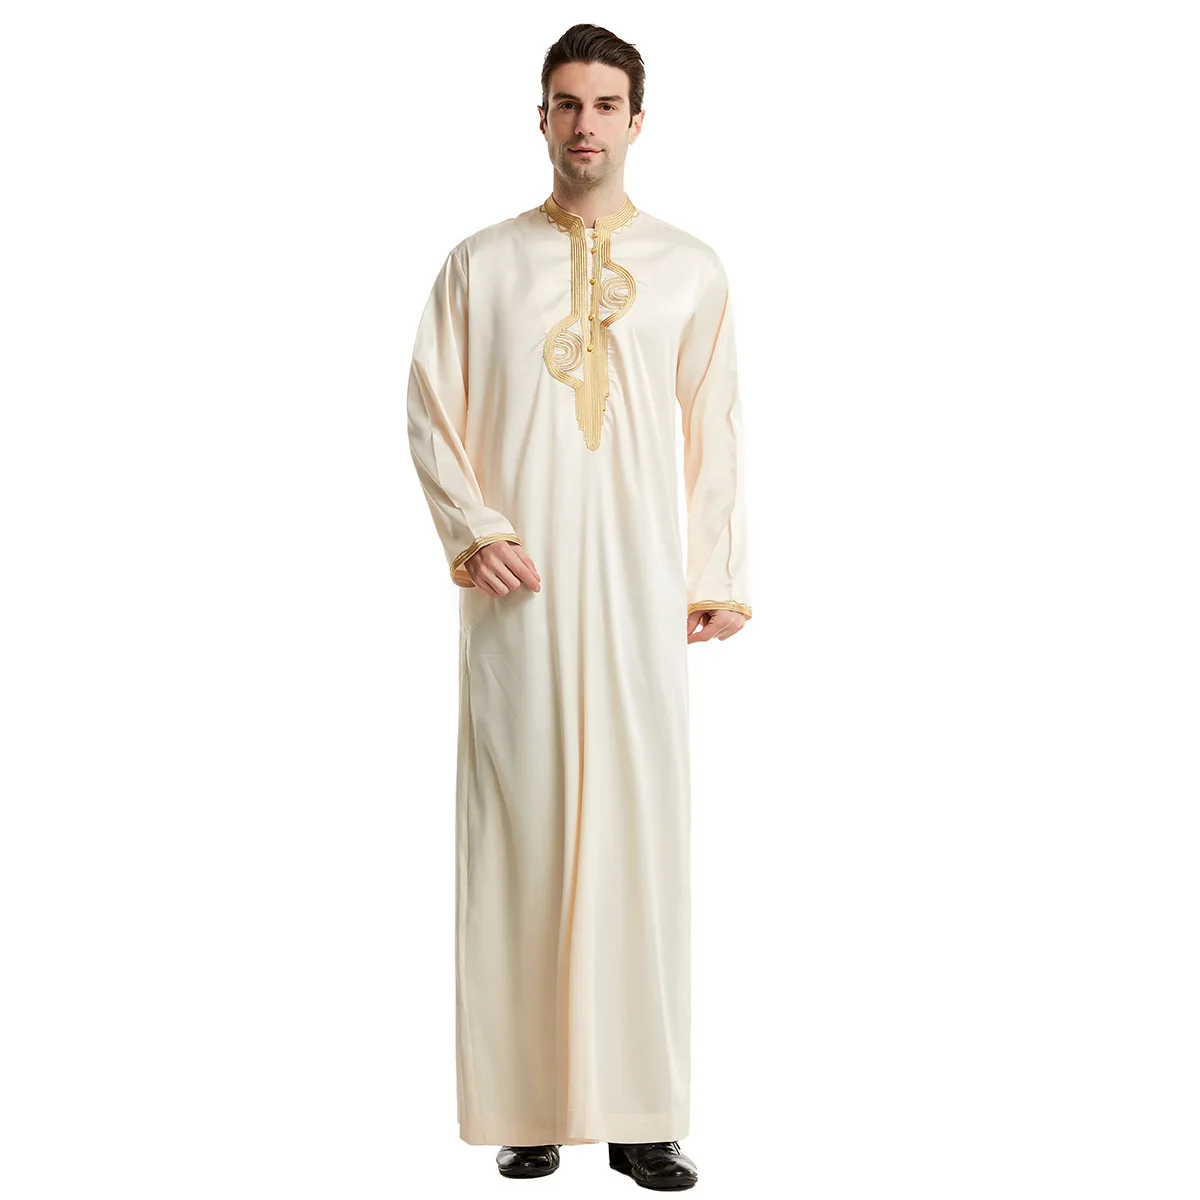 Мусульманские мужчины джубба Тюбе Исламская одежда стенд воротник кимоно длинный халат Саудовская мусулман одежда Кафтан абайя джубба Дуб... от AliExpress RU&CIS NEW